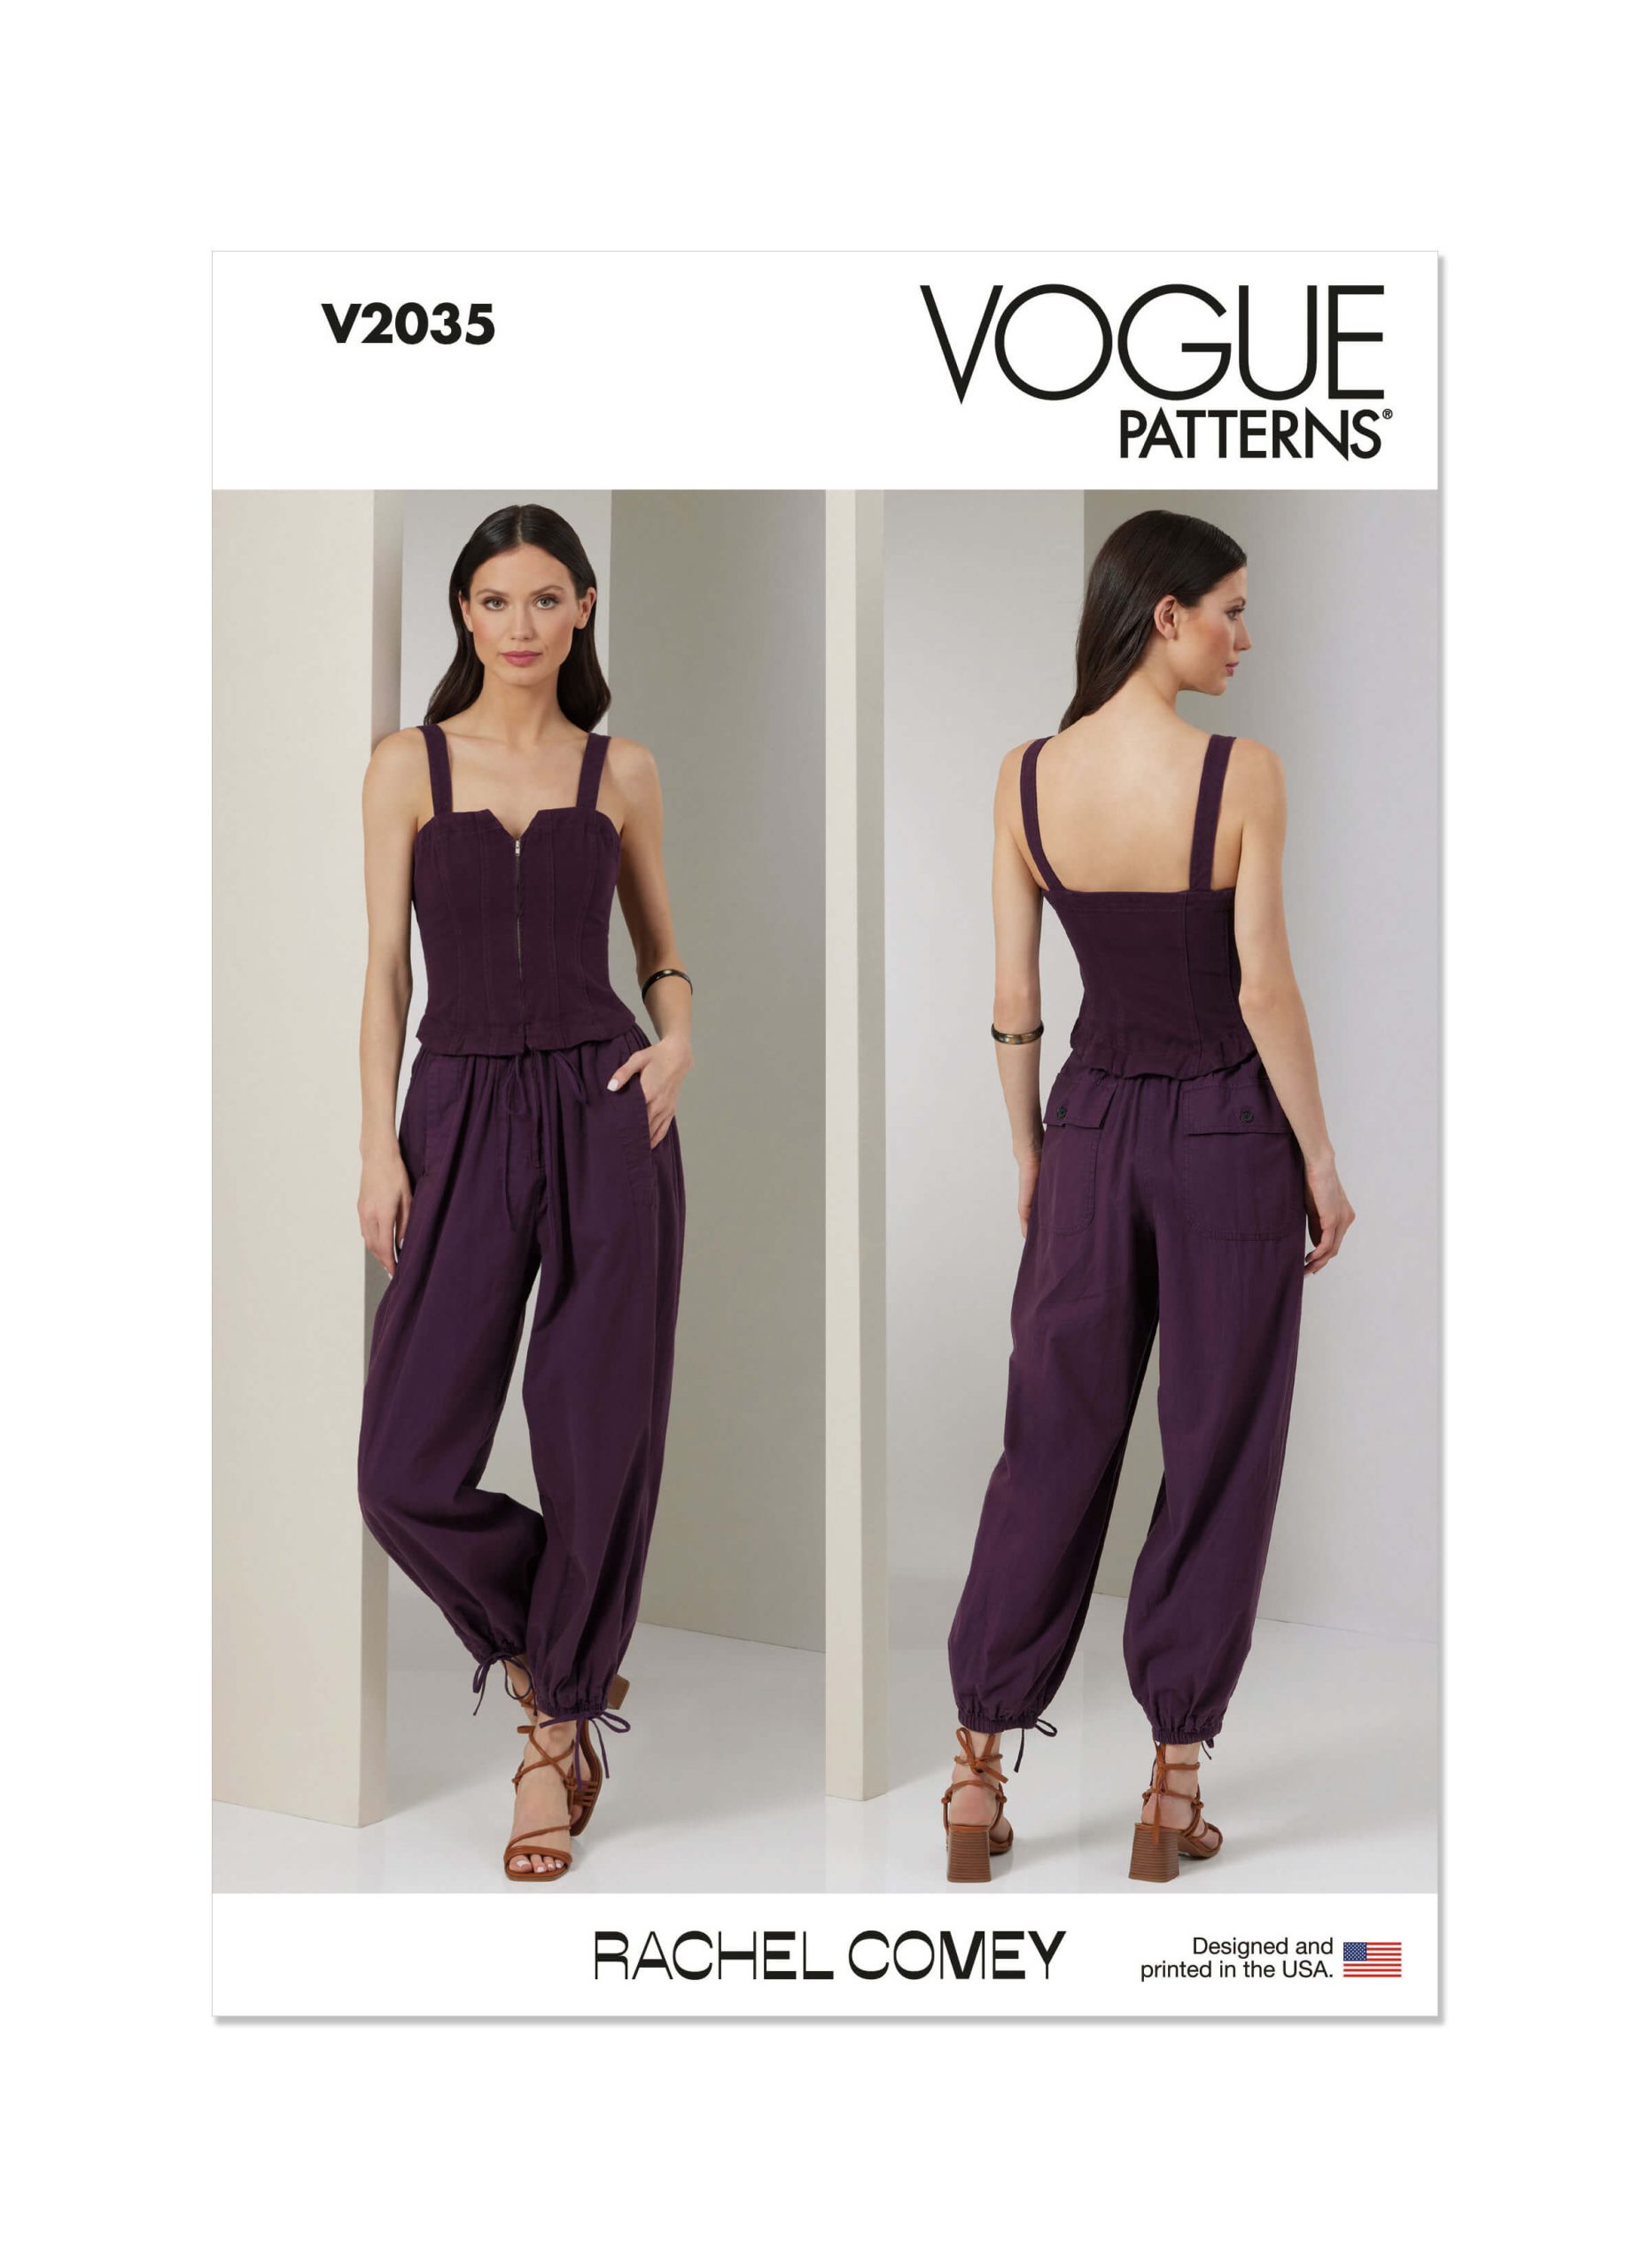 Vogue Patterns V2035 Misses' Jumpsuit by Rachel Comey